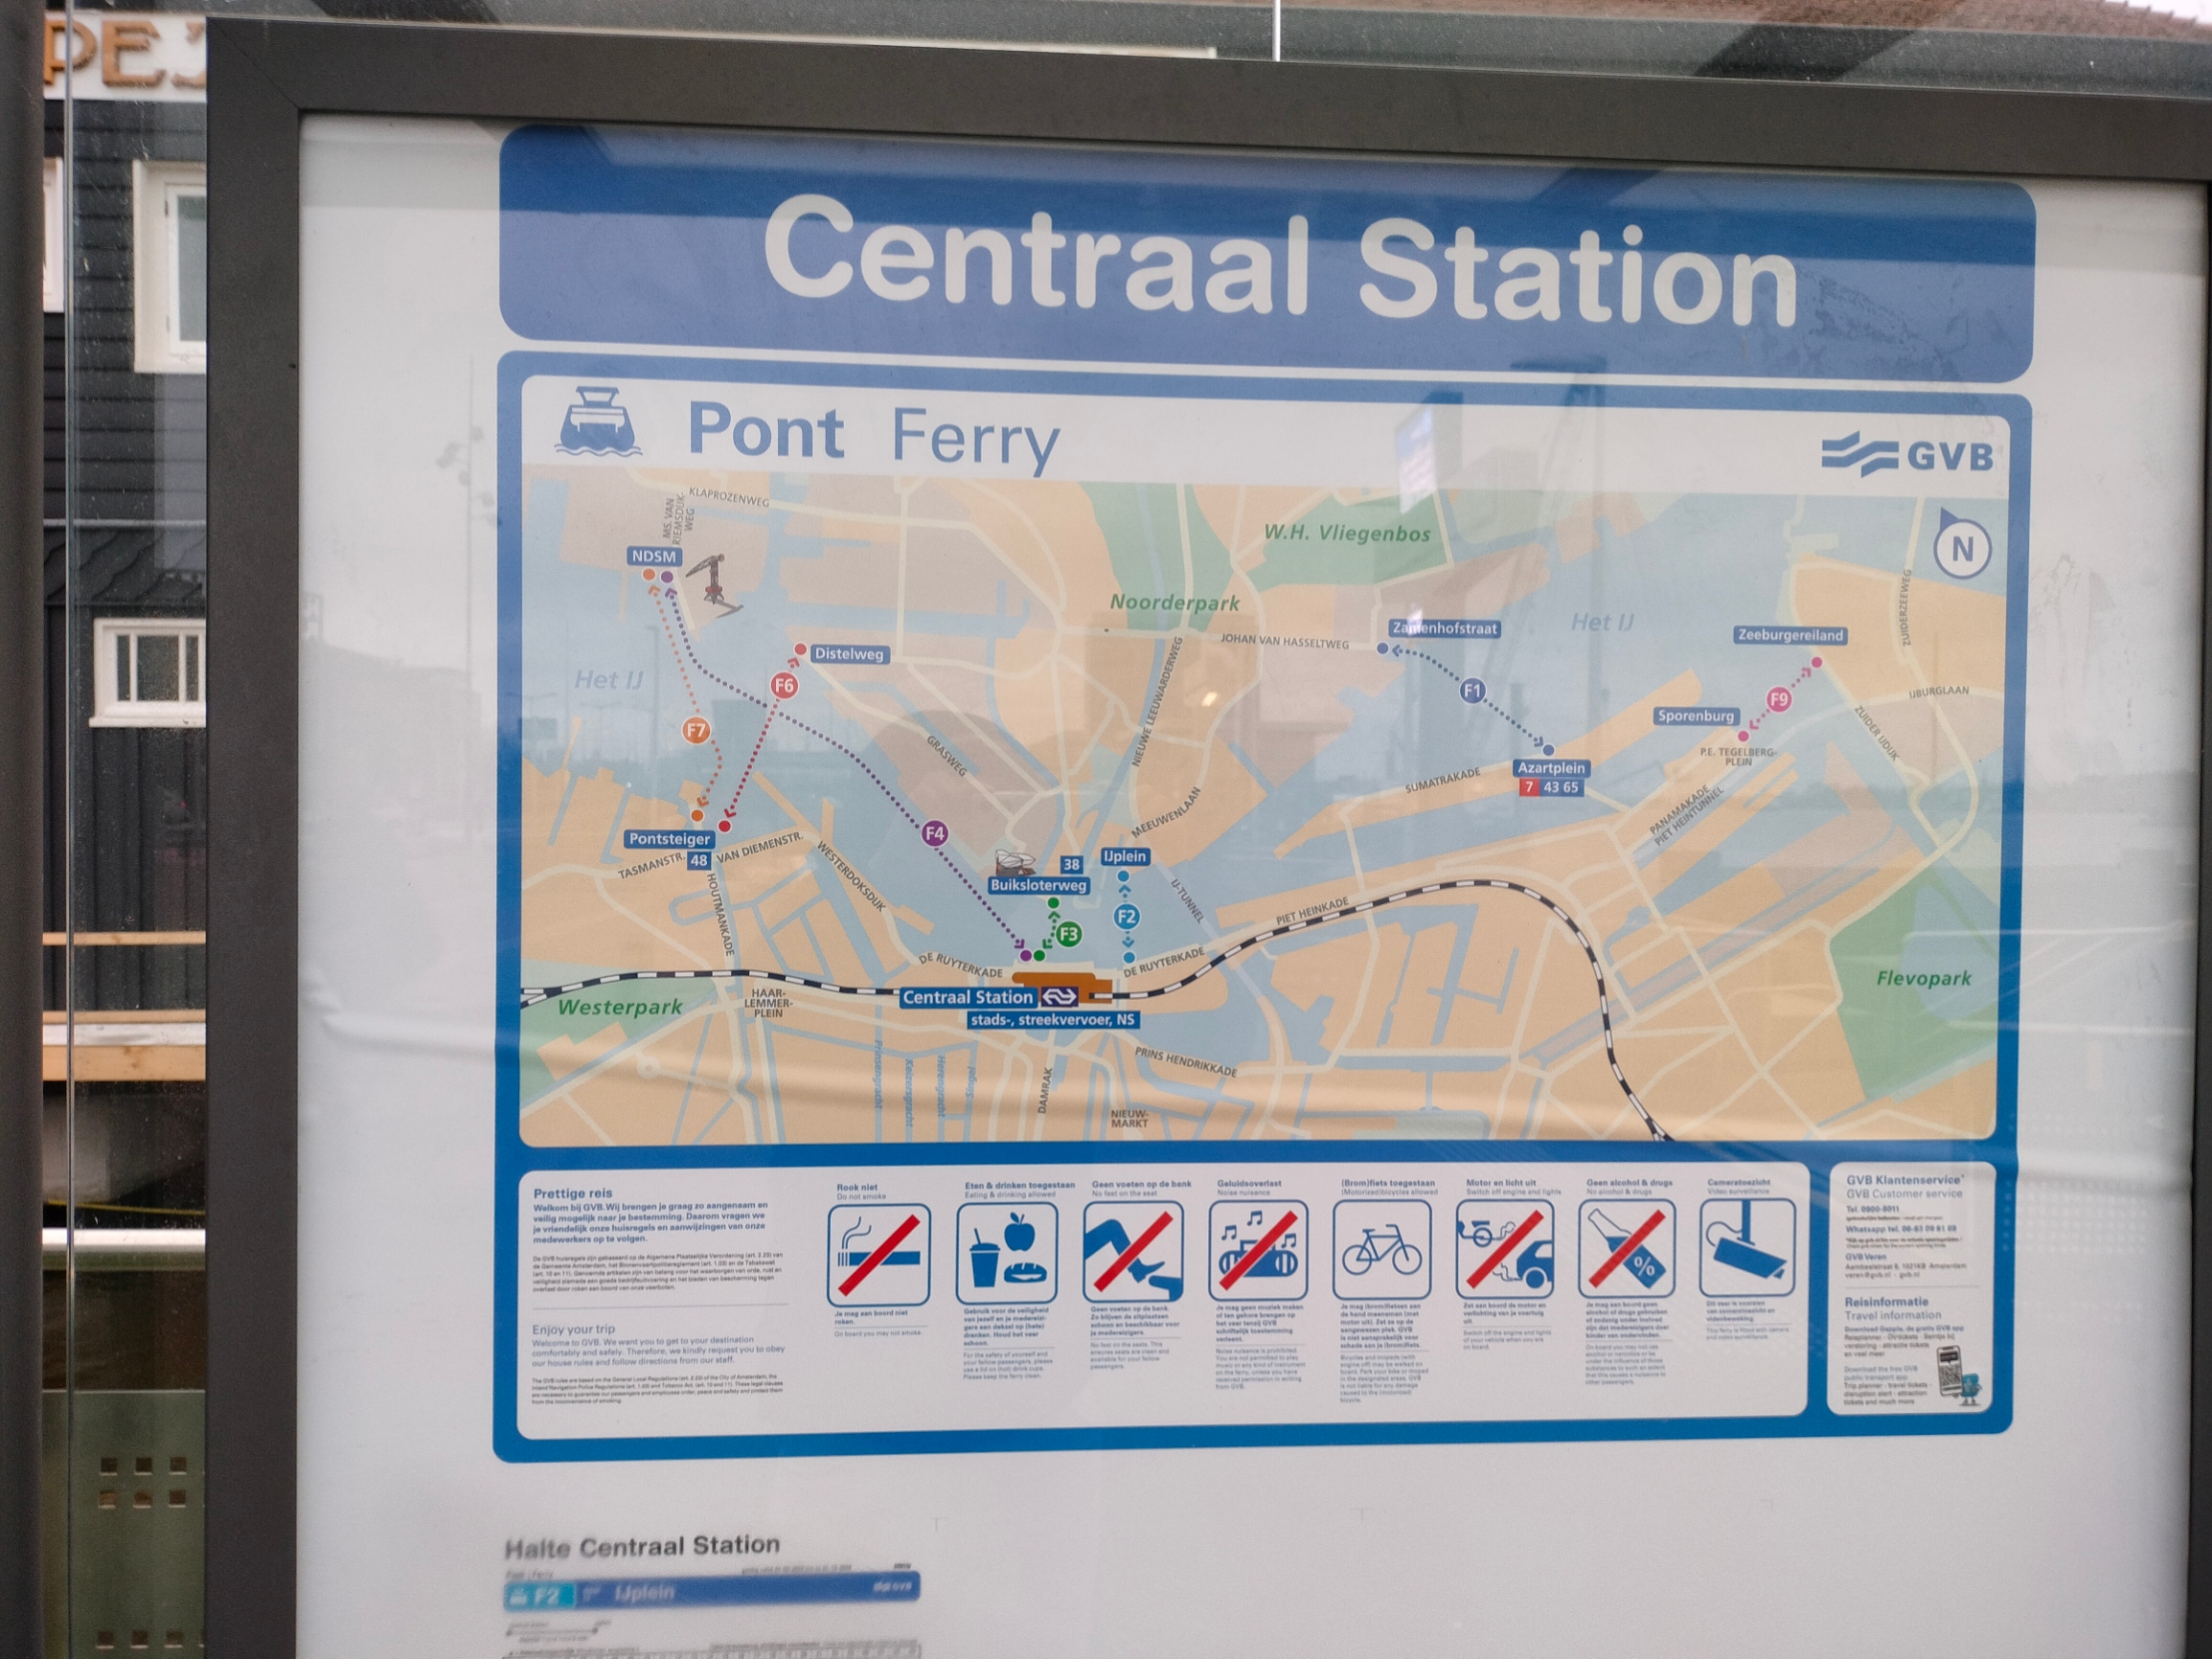 免费渡轮，在中央车站的另一侧出口。3，4号码头可以分别前往NDSM以及EYE，瞭望塔等景点，记住10